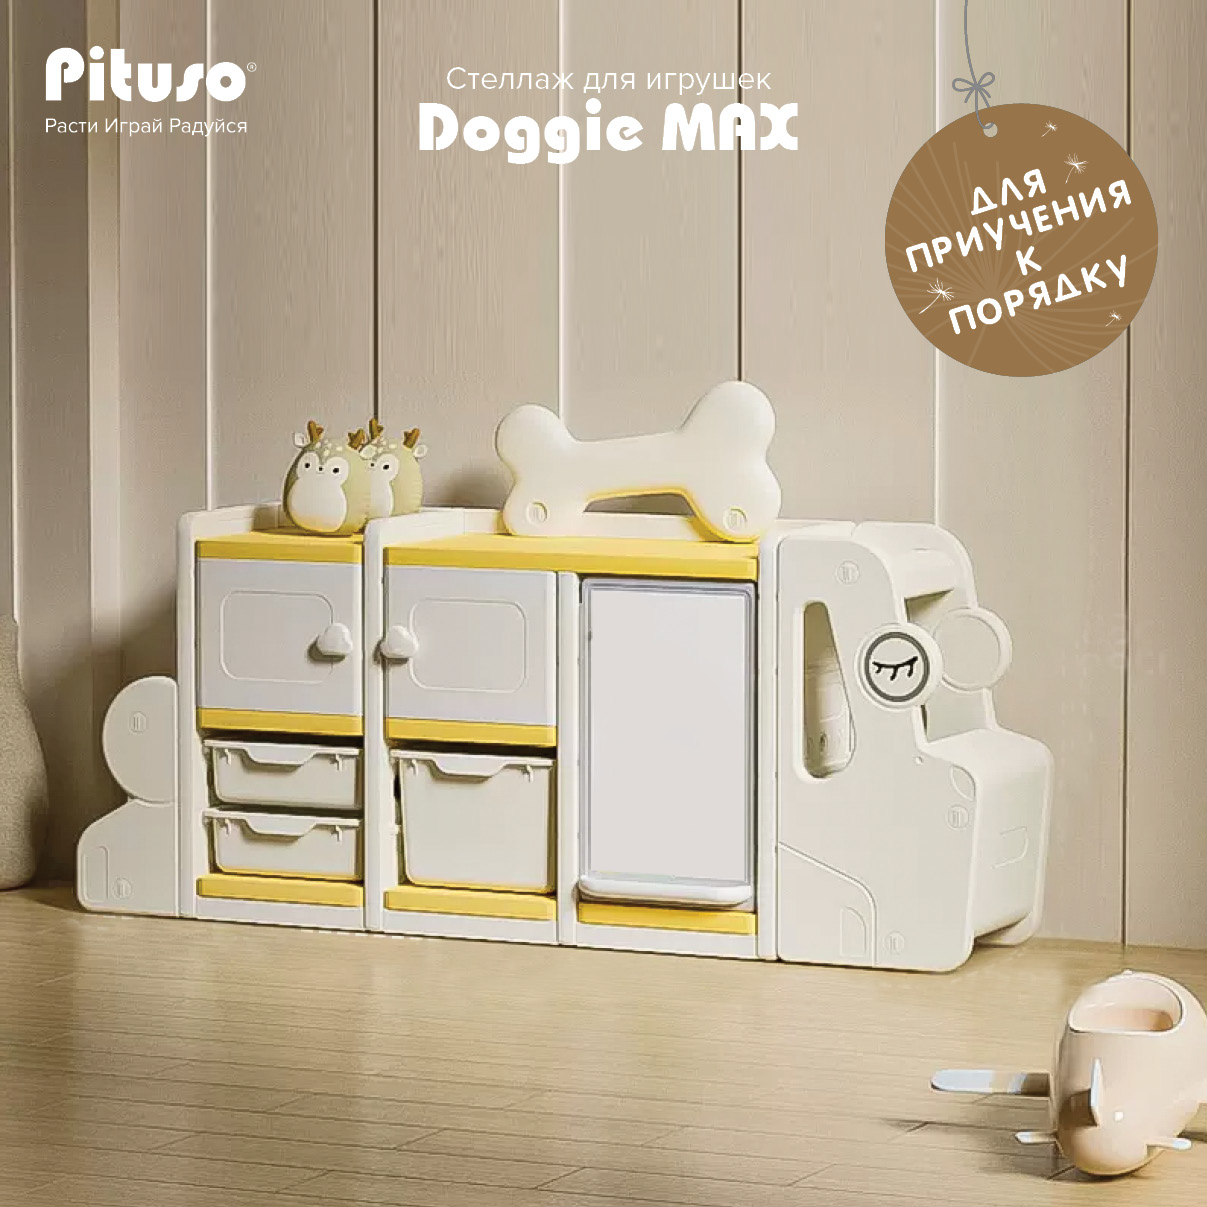 Стеллаж для игрушек с ящиками Pituso Doggie Max, доска для рисования, бежевый, желтый очки для игрушек желтый